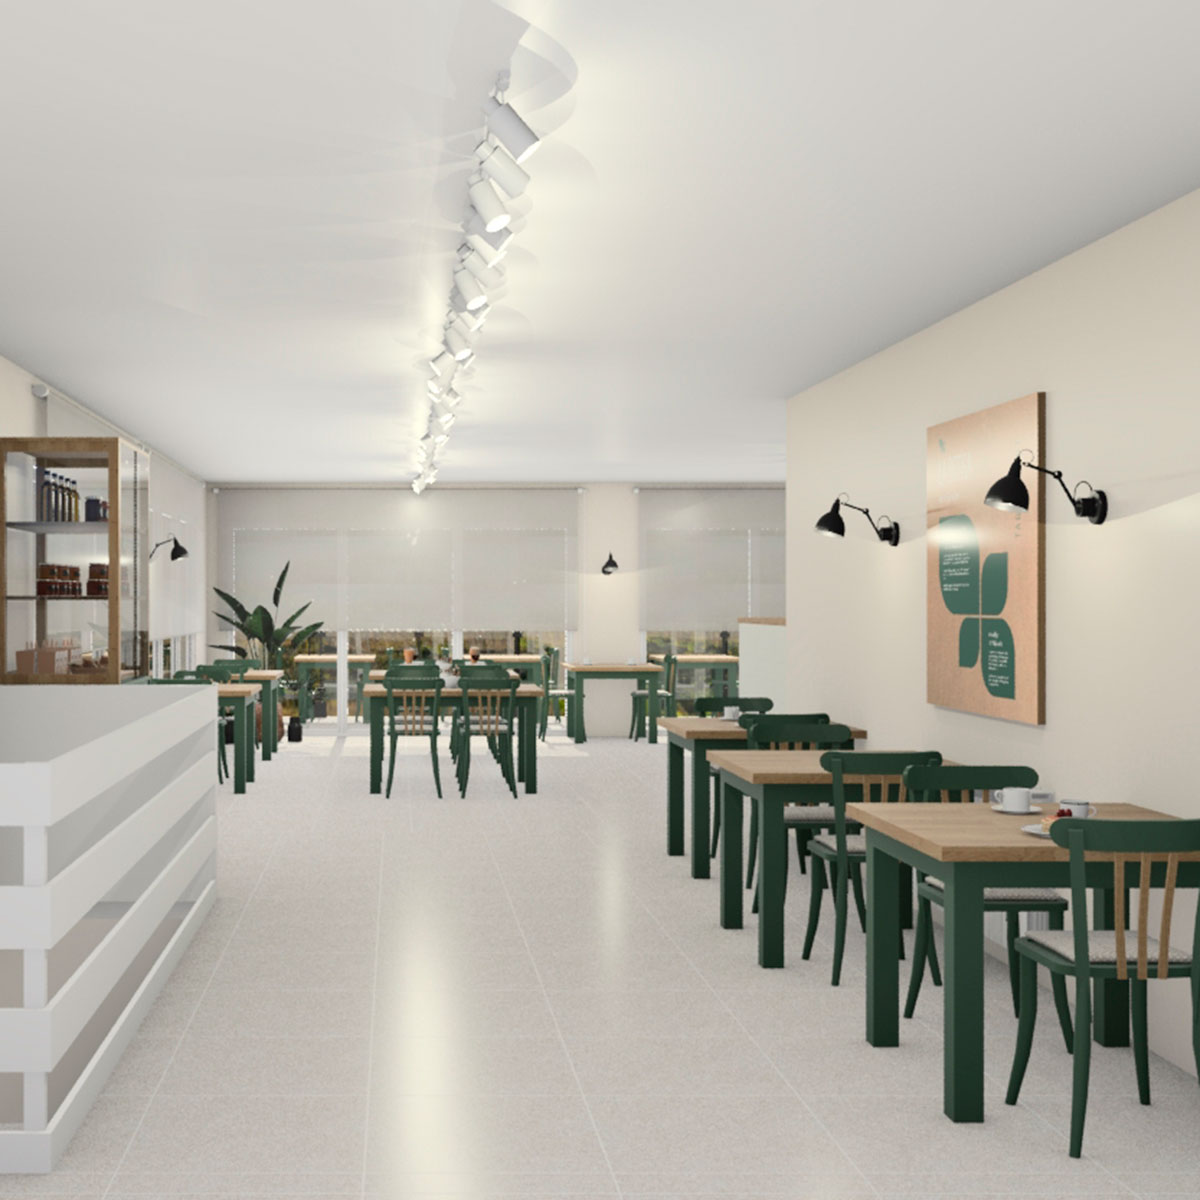 Imatge simulada de l'interior de la Cafeteria Tagamanent.